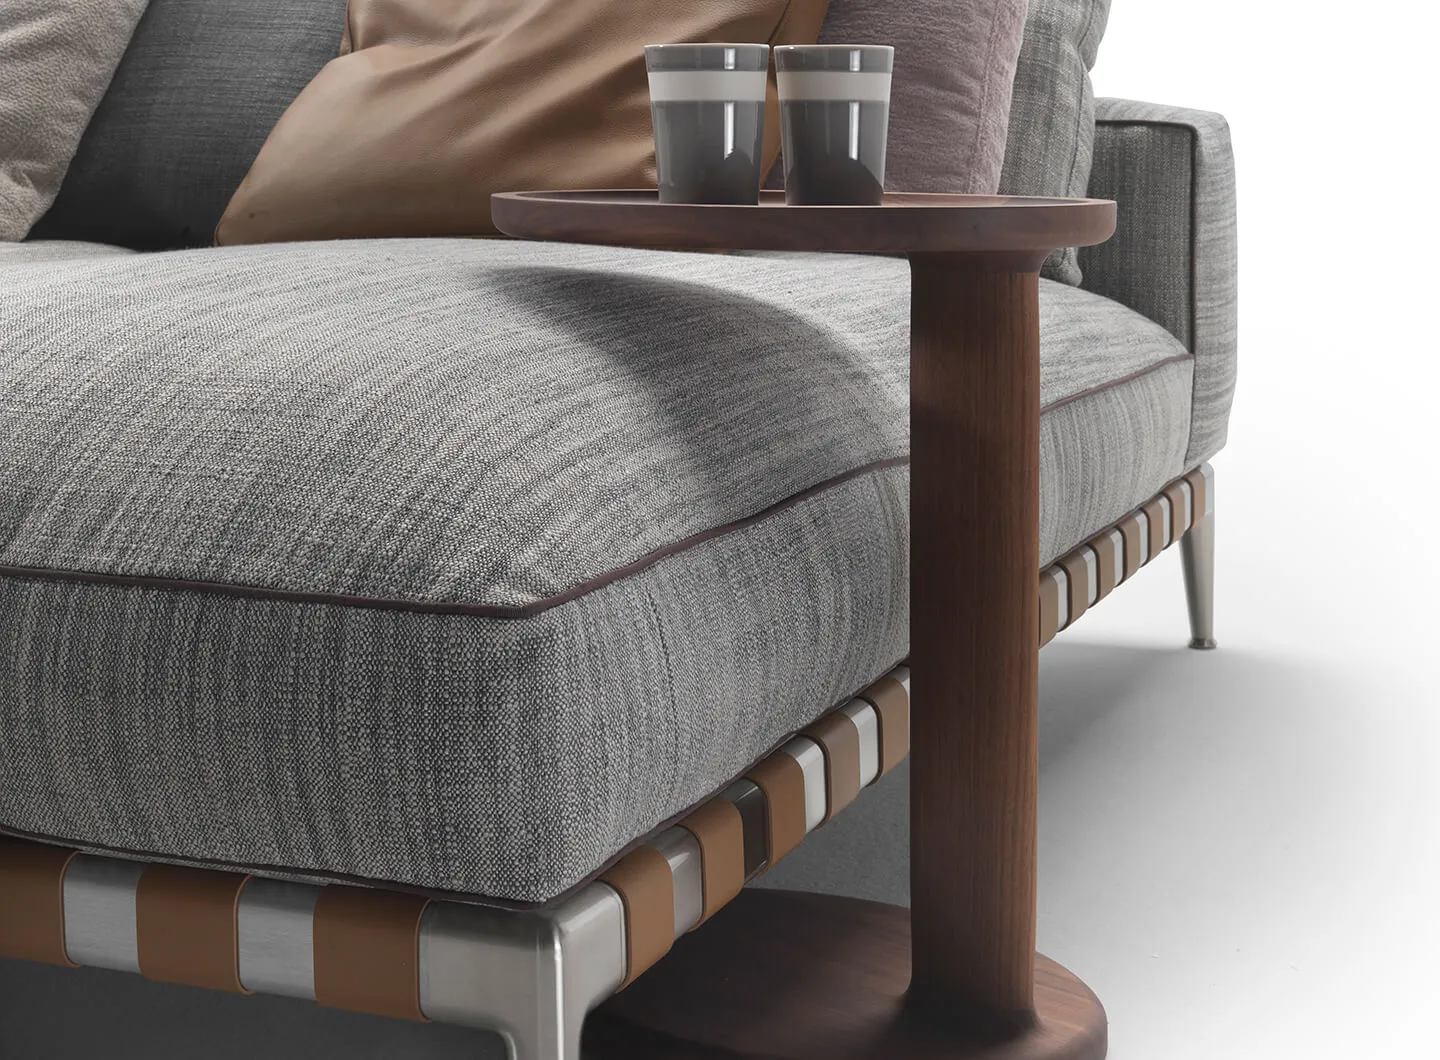 Gregory XL divano componibile, Antonio Citterio design